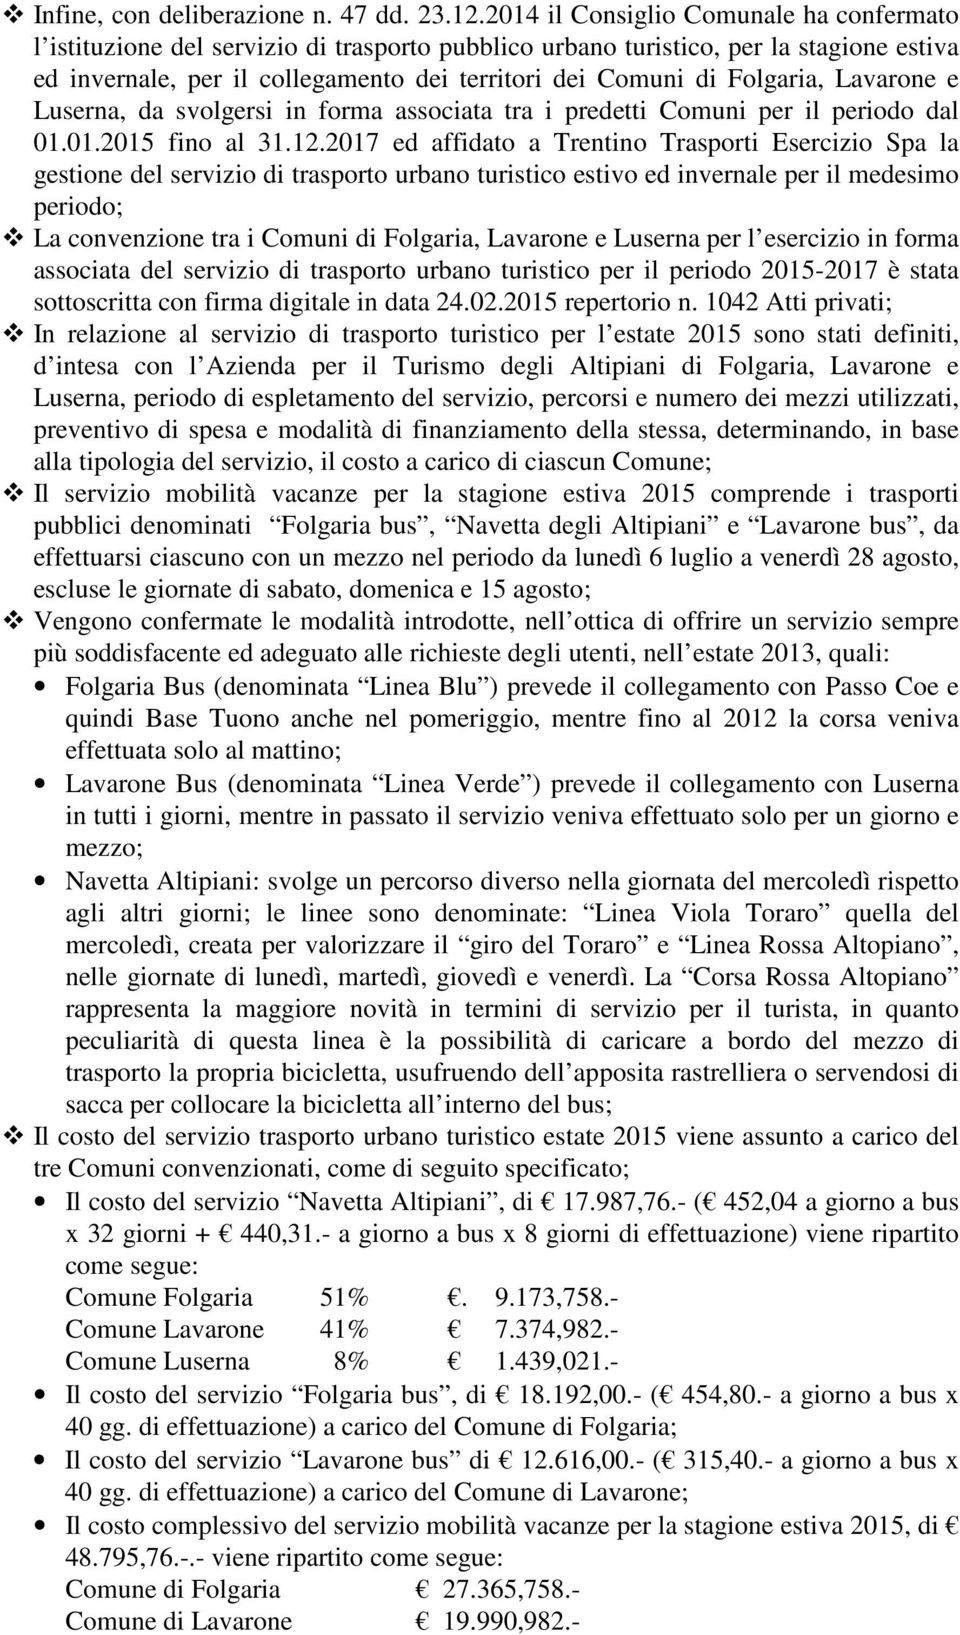 Folgaria, Lavarone e Luserna, da svolgersi in forma associata tra i predetti Comuni per il periodo dal 01.01.2015 fino al 31.12.